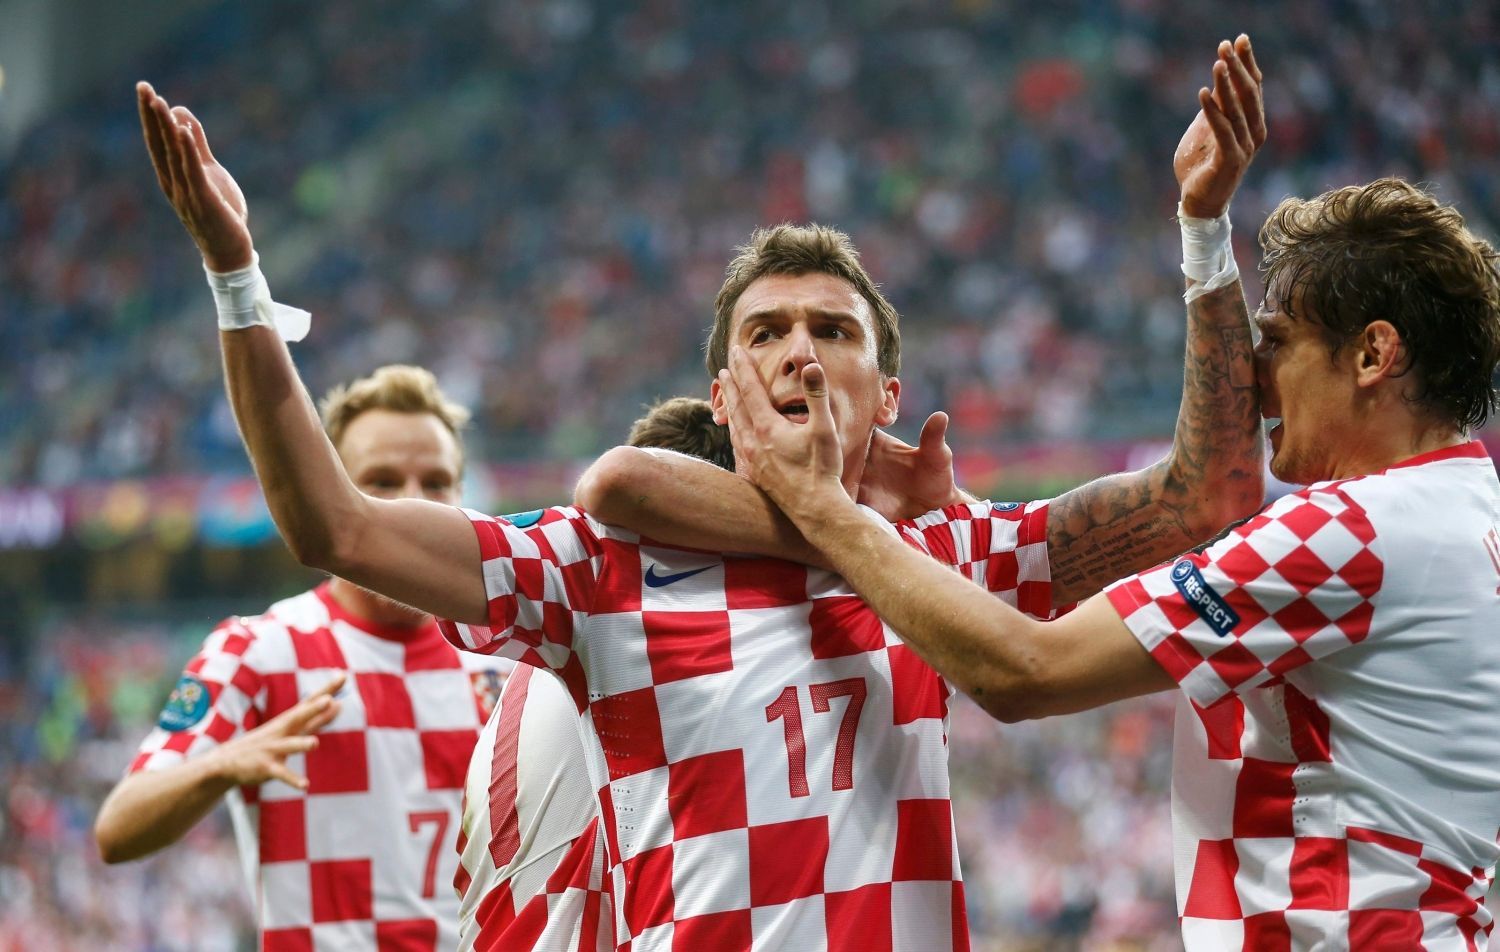 Mario Mandžukič se raduje z gólu v utkání Chorvatska s Itálií ve skupině C na Euru 2012